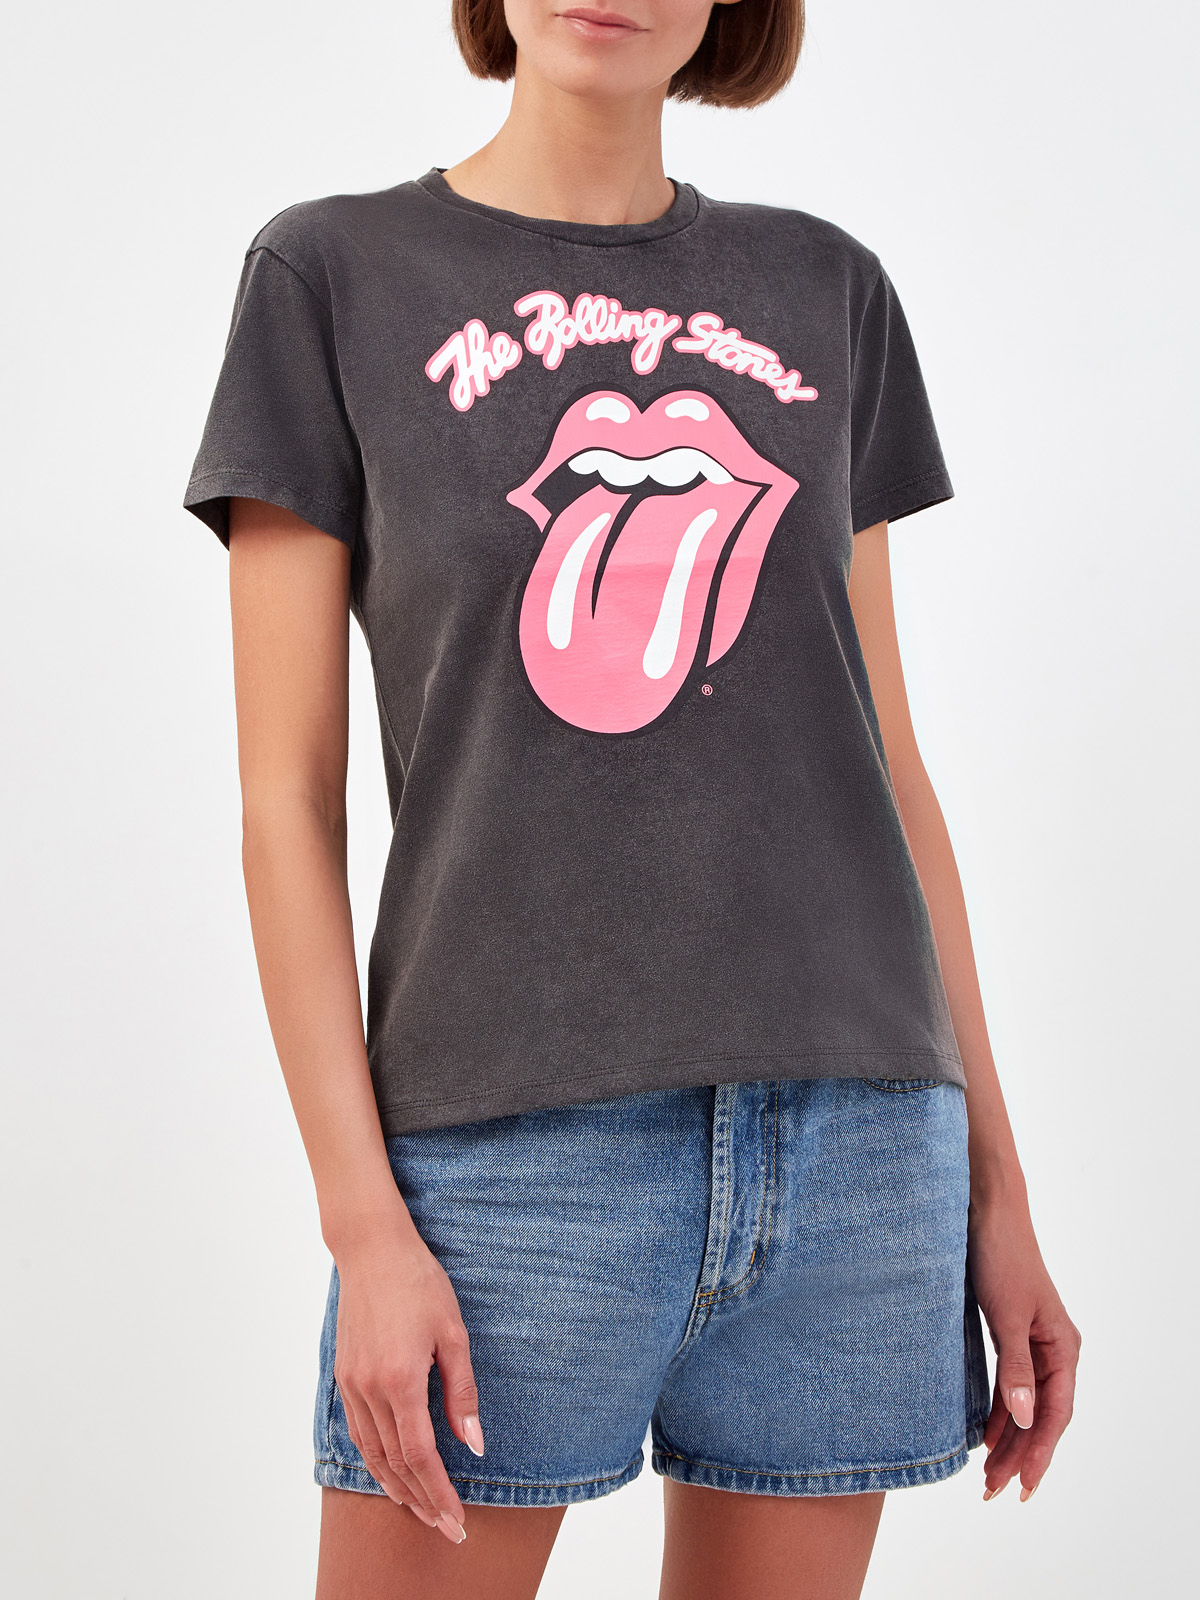 Хлопковая футболка с эксклюзивным принтом The Rolling Stones® MC2 SAINT BARTH, цвет серый, размер S;M;L - фото 3